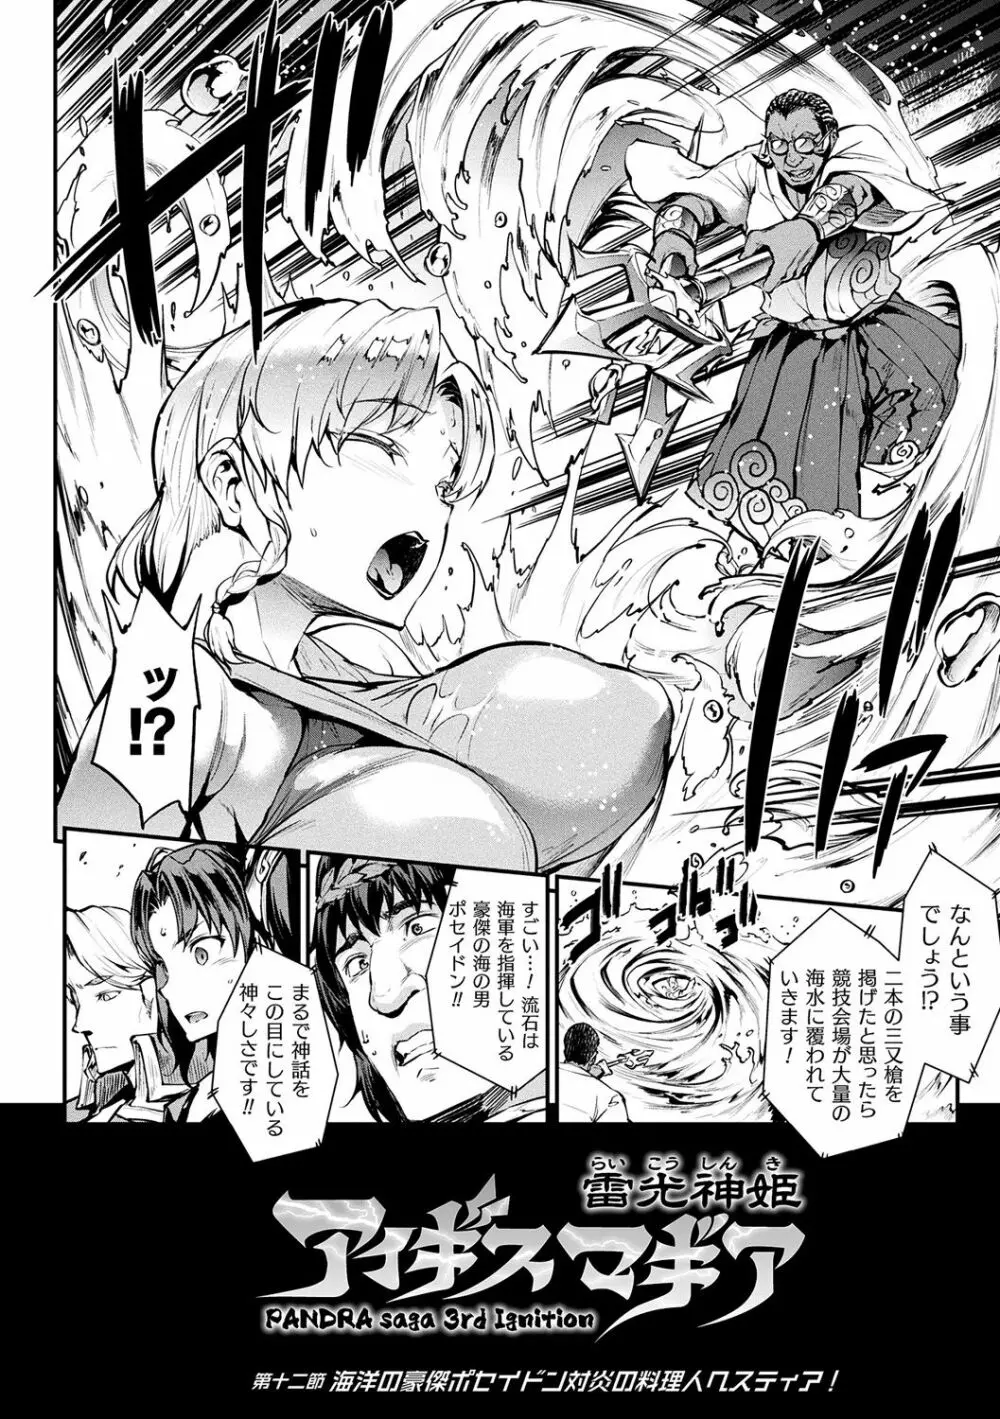 [エレクトさわる] 雷光神姫アイギスマギアII -PANDRA saga 3rd ignition- + 電子書籍特典デジタルポスター [DL版] 98ページ